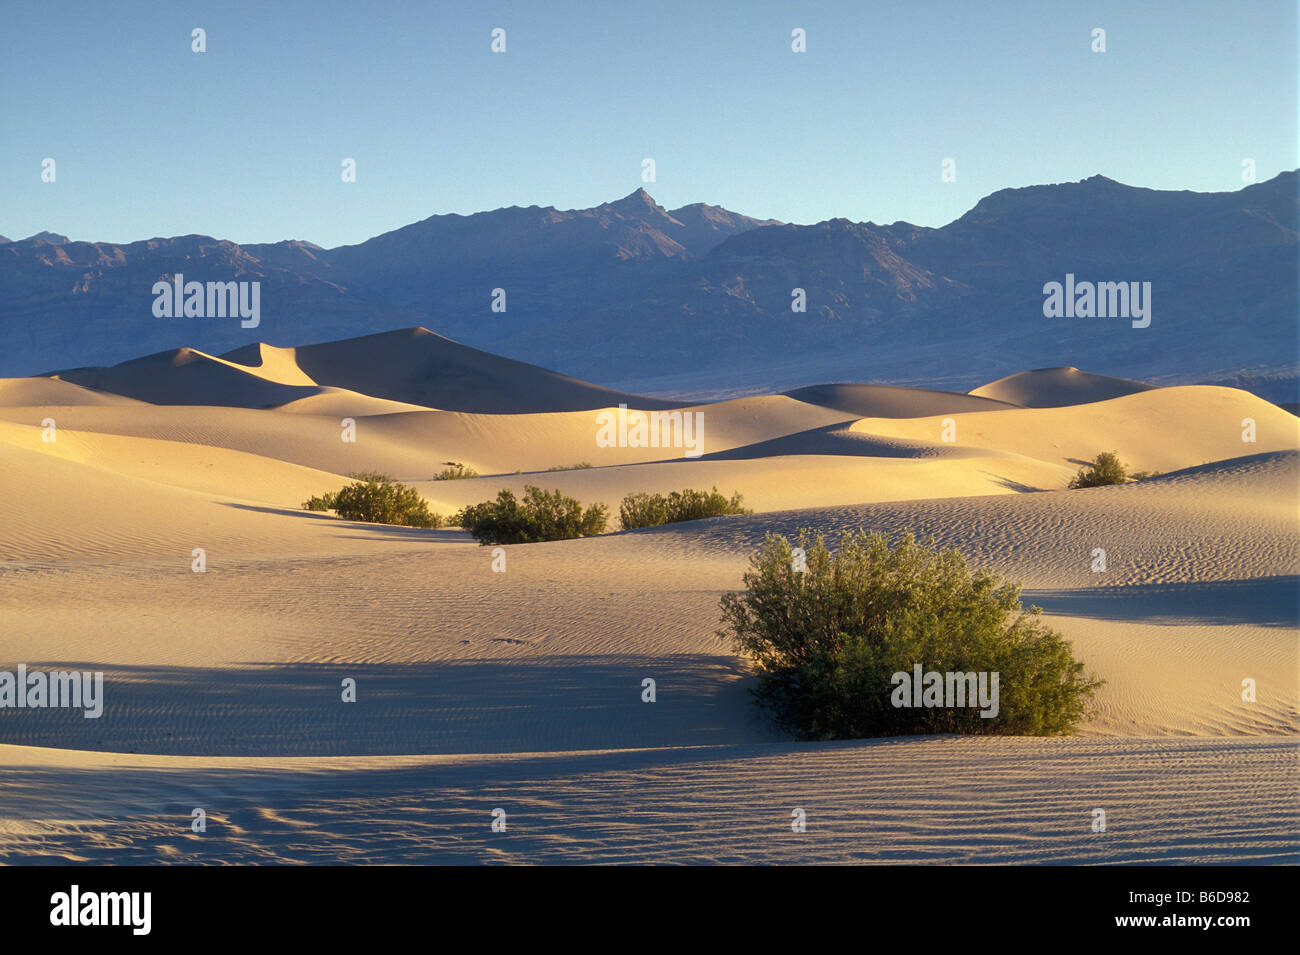 Télévision Mesquite Sand Dunes, Buissons de créosote et Grapevine Mountains ; Death Valley National Park, California, USA. Banque D'Images